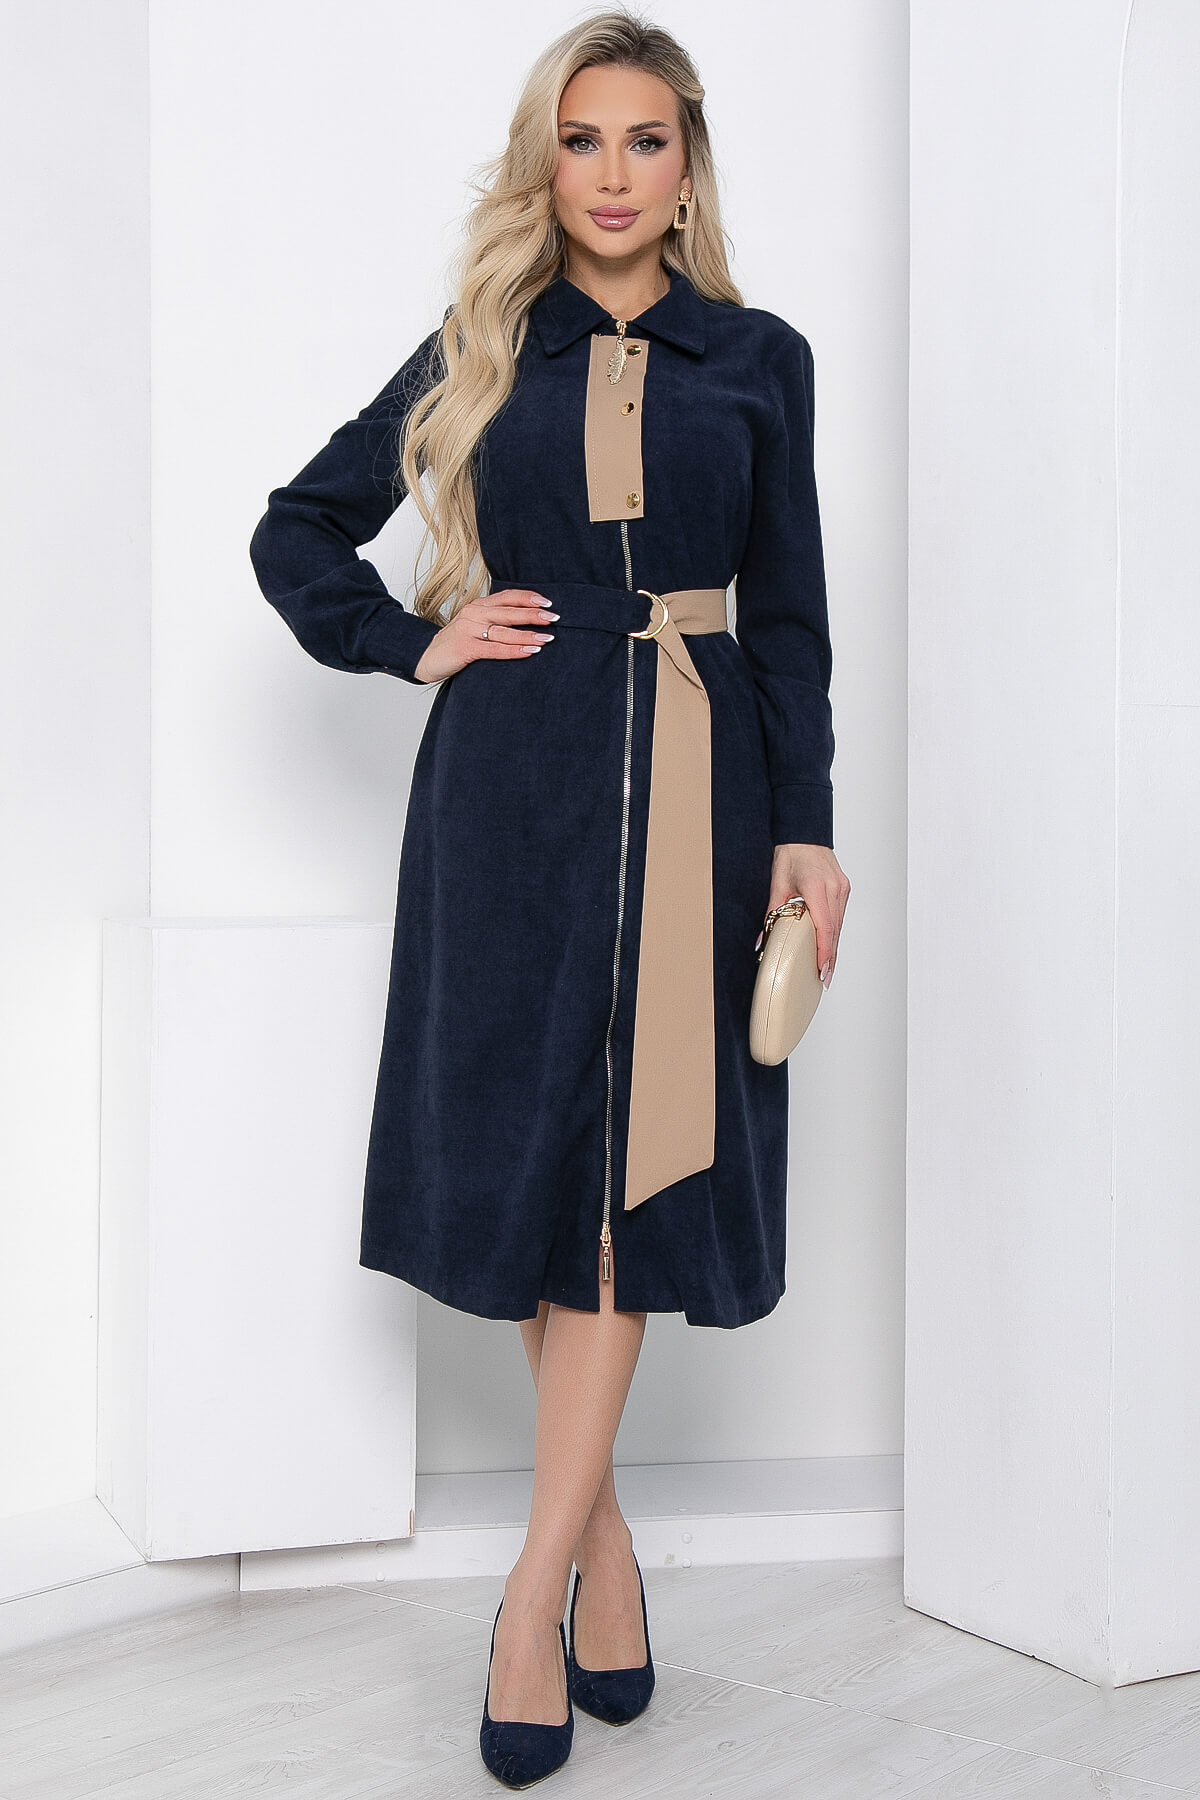 Платье женское LT Collection Чувство стиля синее 52 RU